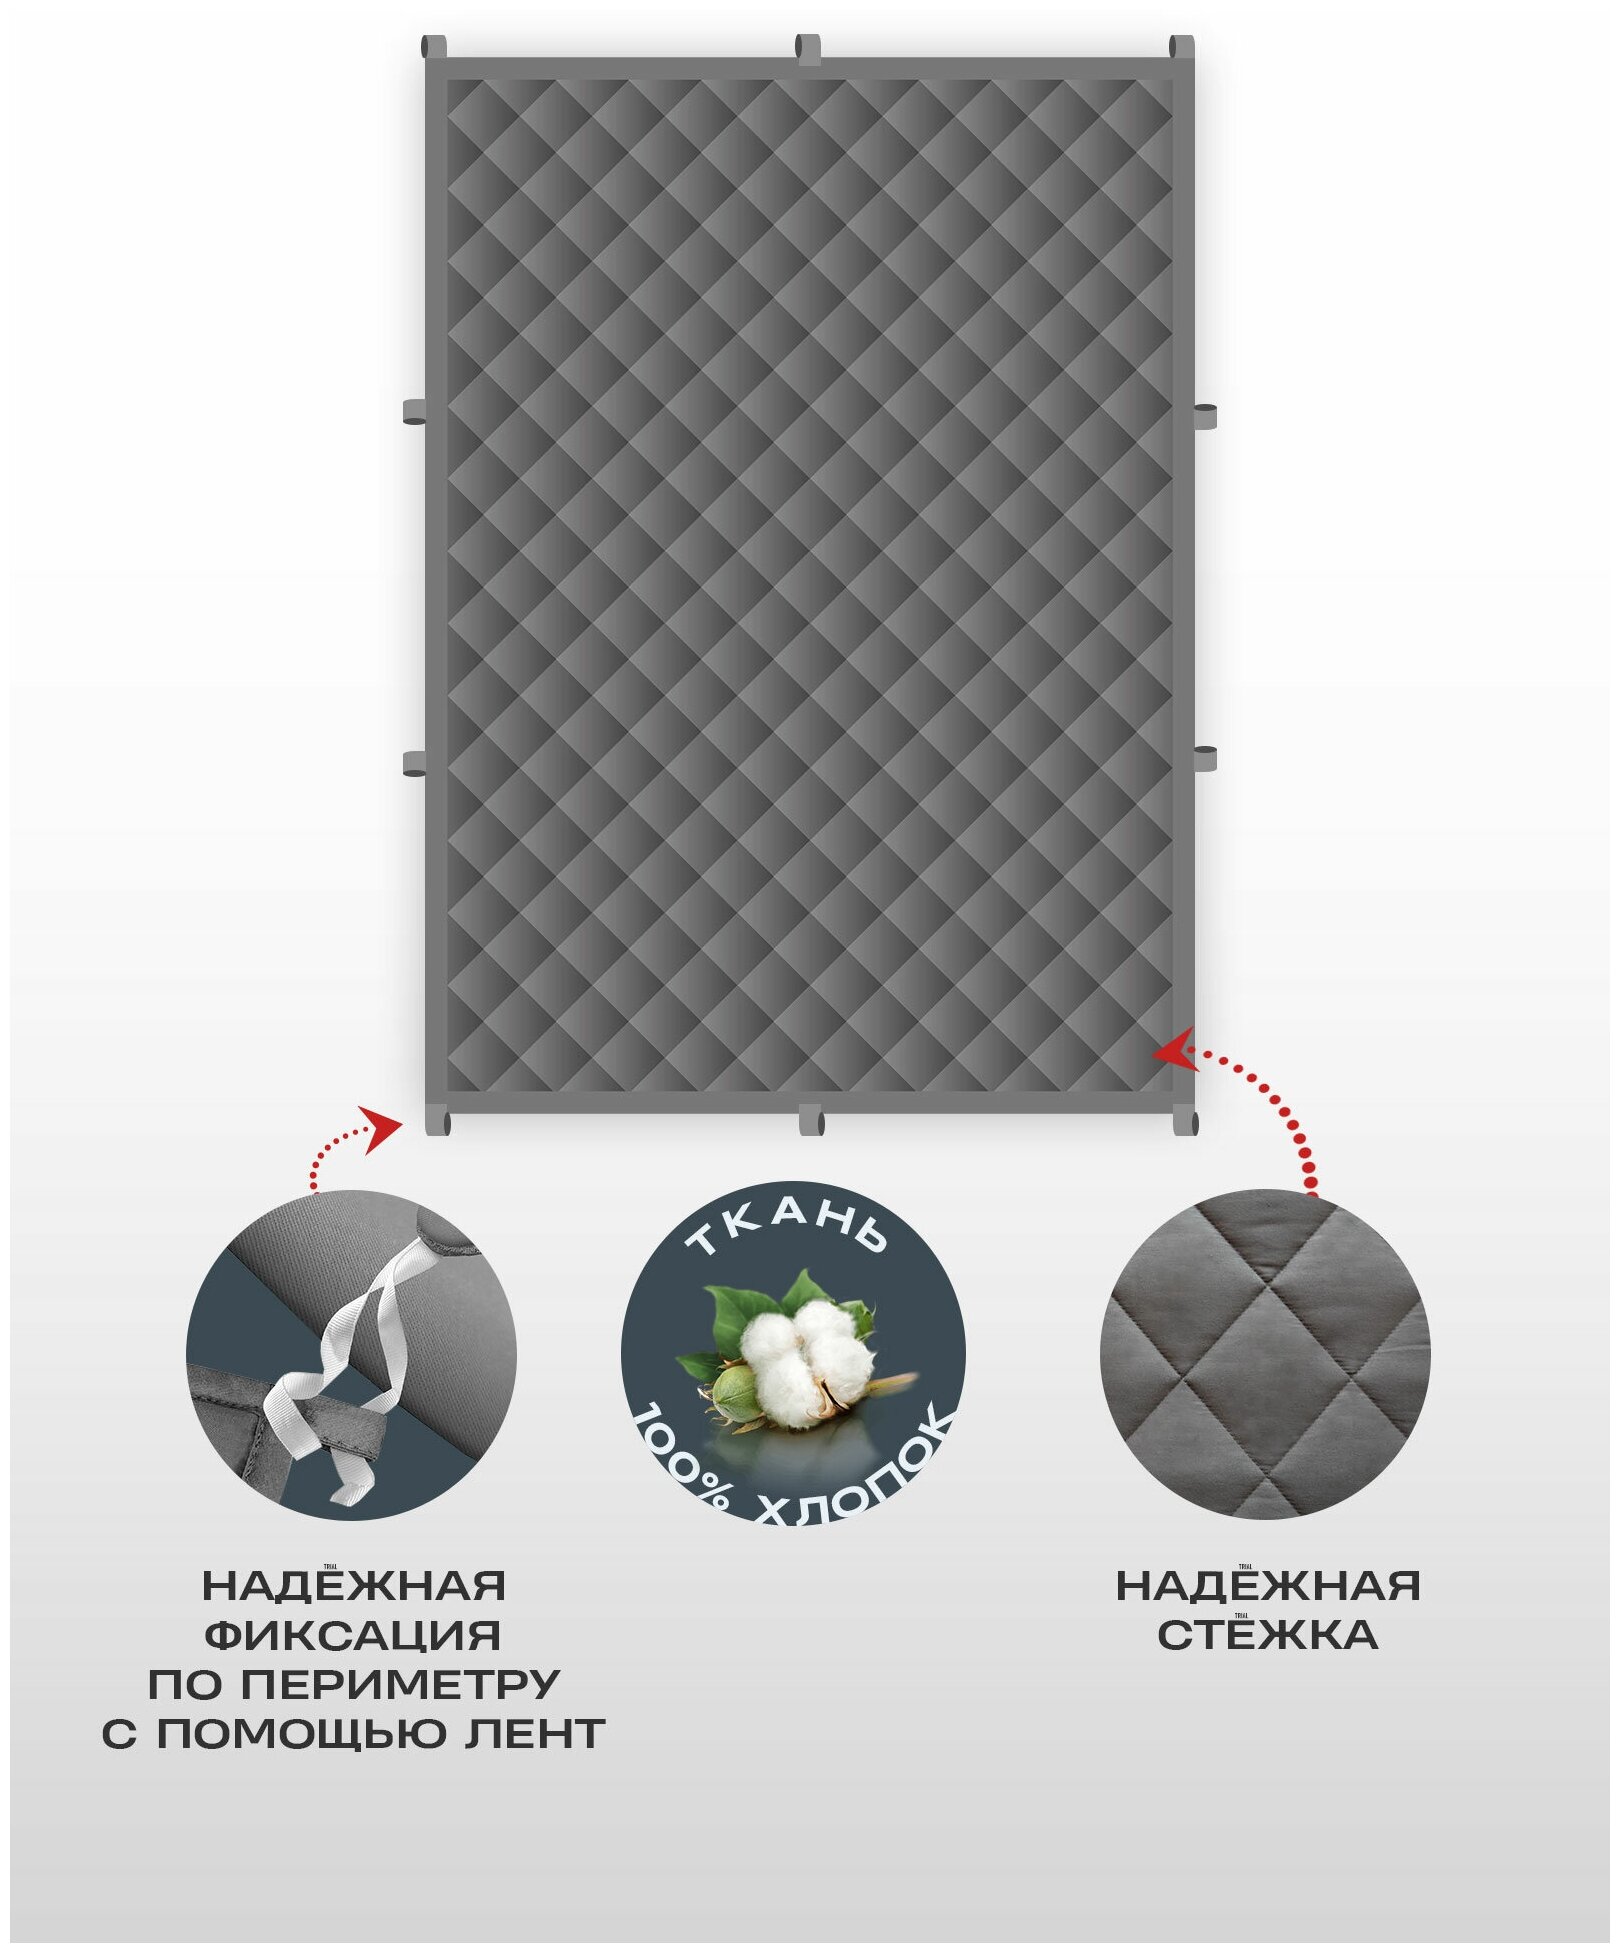 Утяжеленное одеяло Gravity (Гравити) Wellina, 200x220 см. темно-серое 9 кг. Евро / Сенсорное одеяло Gravity 200 x 220 см. 9 кг. (цвет темно-серый) - фотография № 8